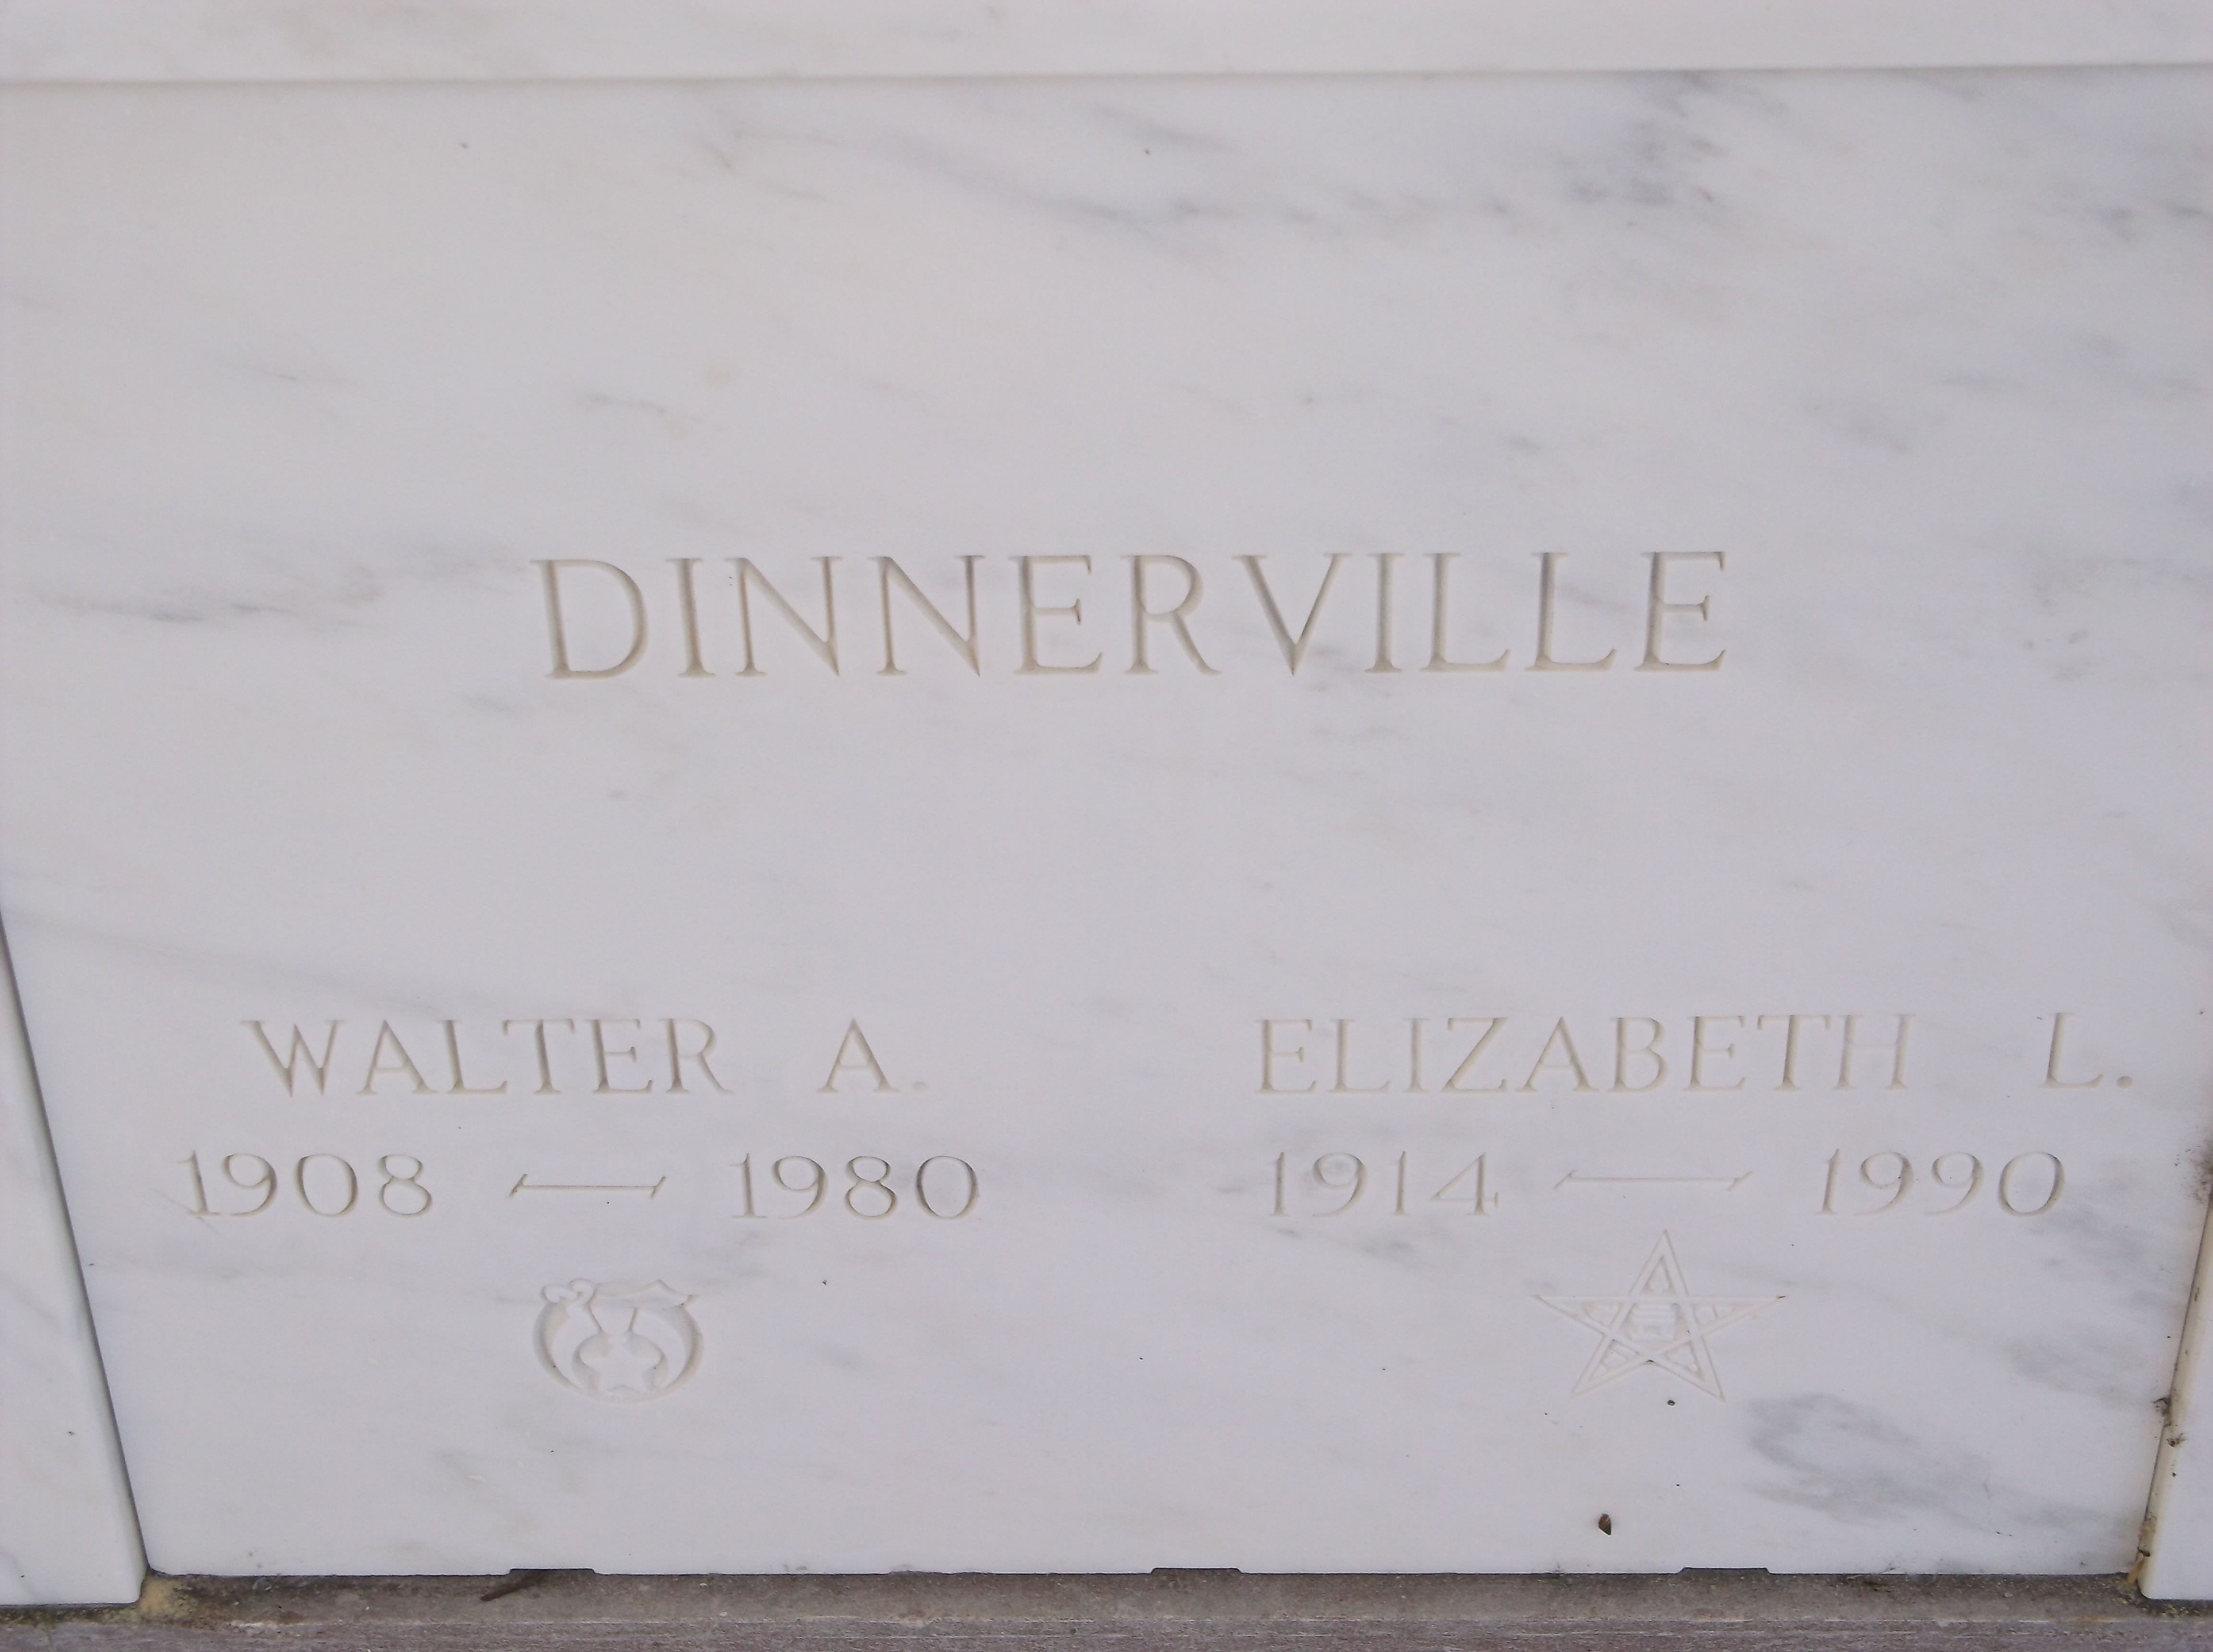 Walter A Dinnerville